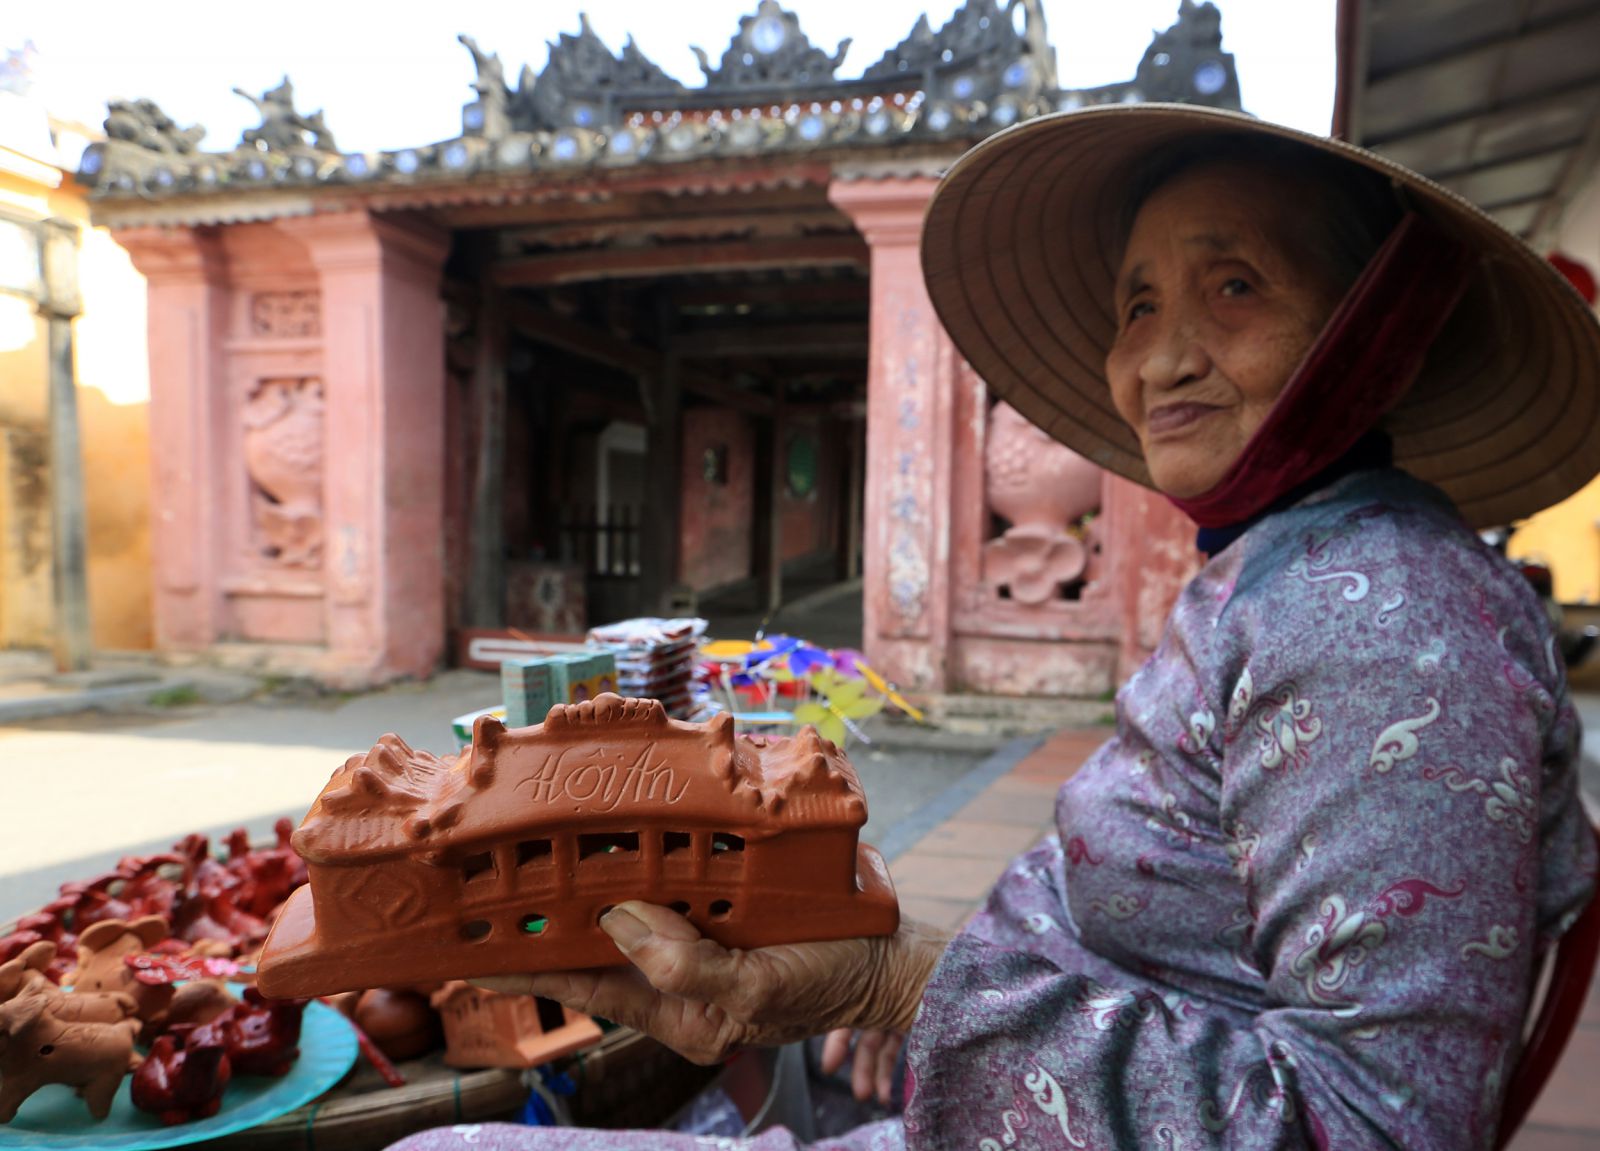 Làng gốm Thanh Hà ở Hội An cũng chế tác những sản phẩm lưu niệm hình Chùa Cầu để bán cho du khách.